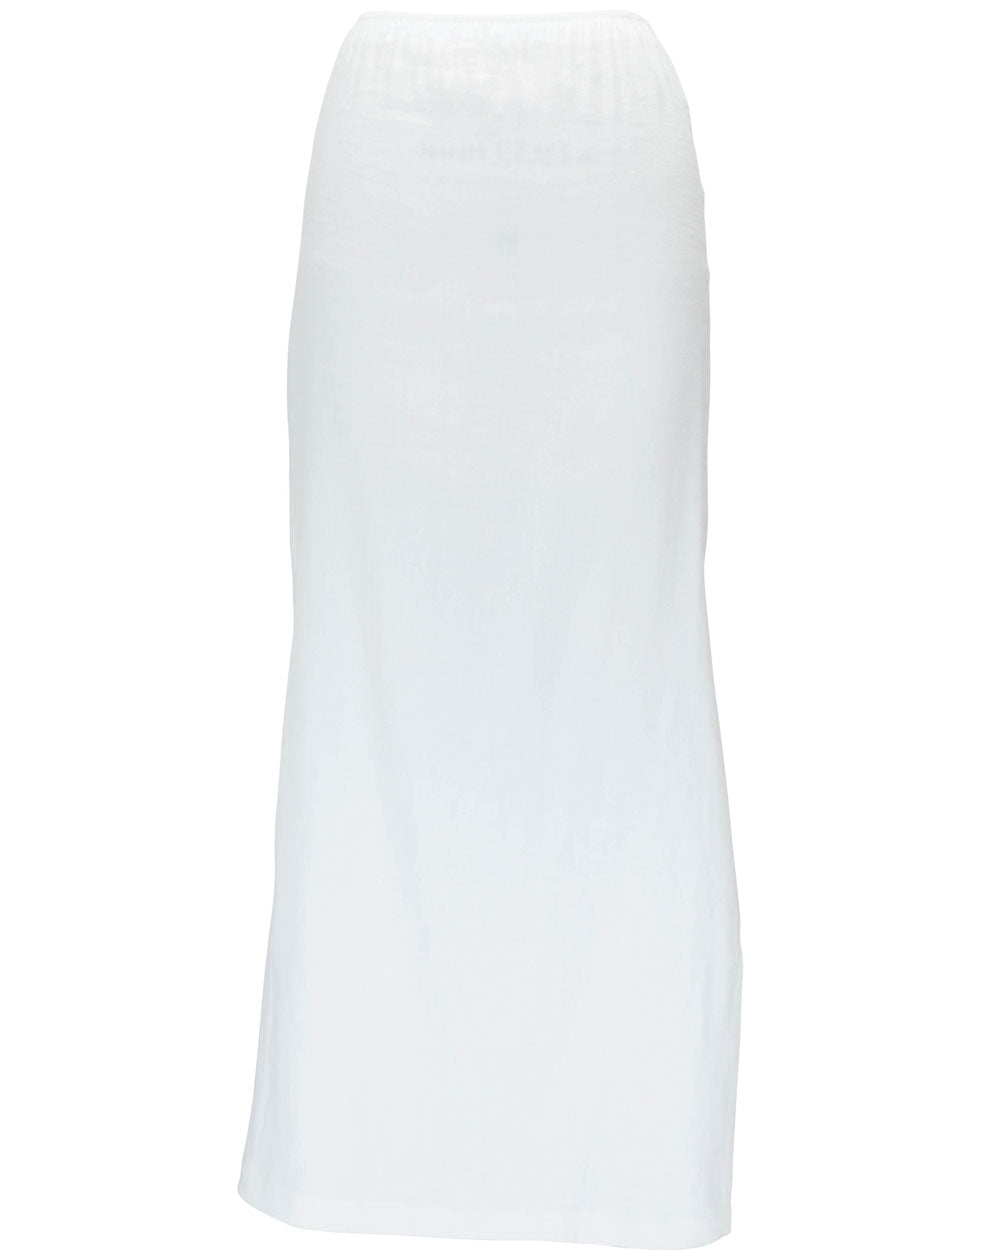 White Linen Blend Stem Skirt